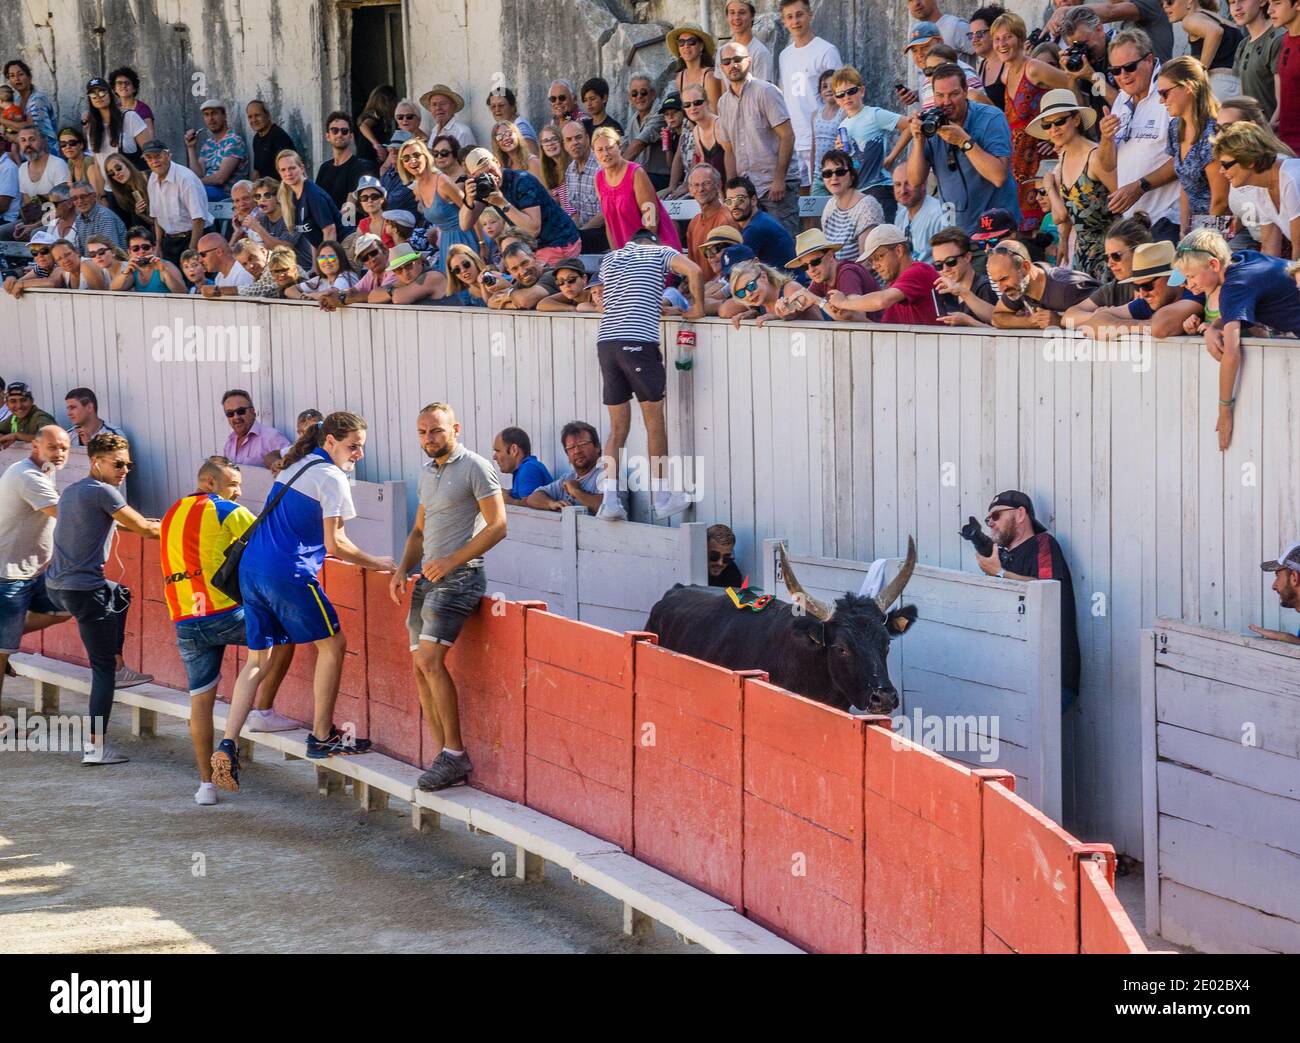 Un taureau sauta les barricades et fait que les spectateurs se bousculent, lors d'une course de taureaux de Carmargue (course camarguaise) à l'amphithéâtre romain Arènes d'Arles Banque D'Images